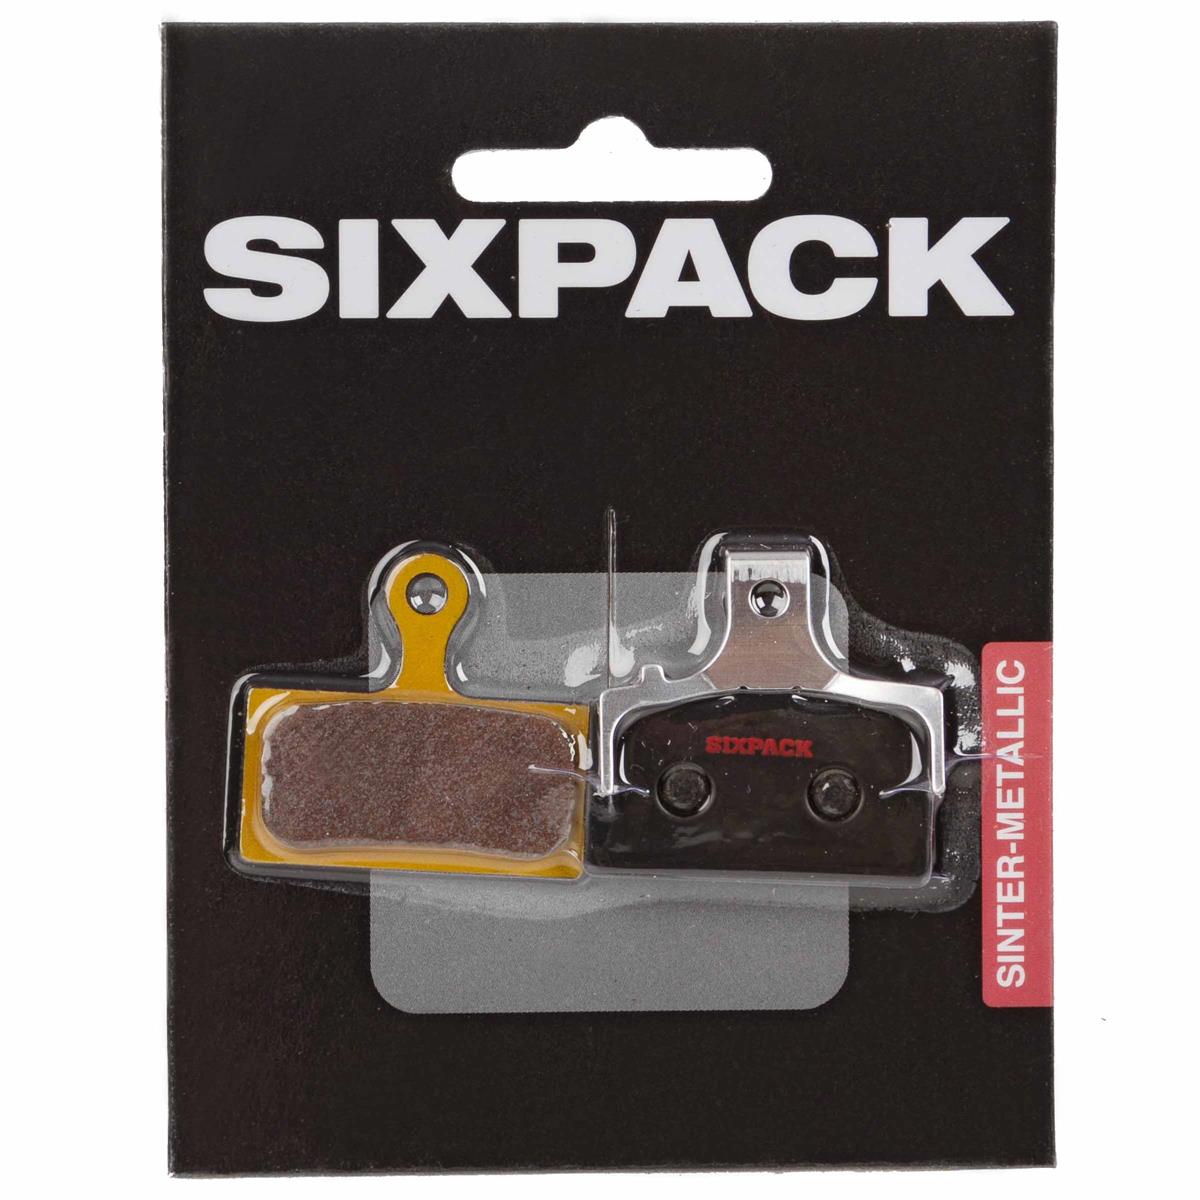 Sixpack Plaquettes VTT Shimano XTR/XT/SLX Fritté, pour Shimano XTR/XT/SLX (IcetechR compatible)